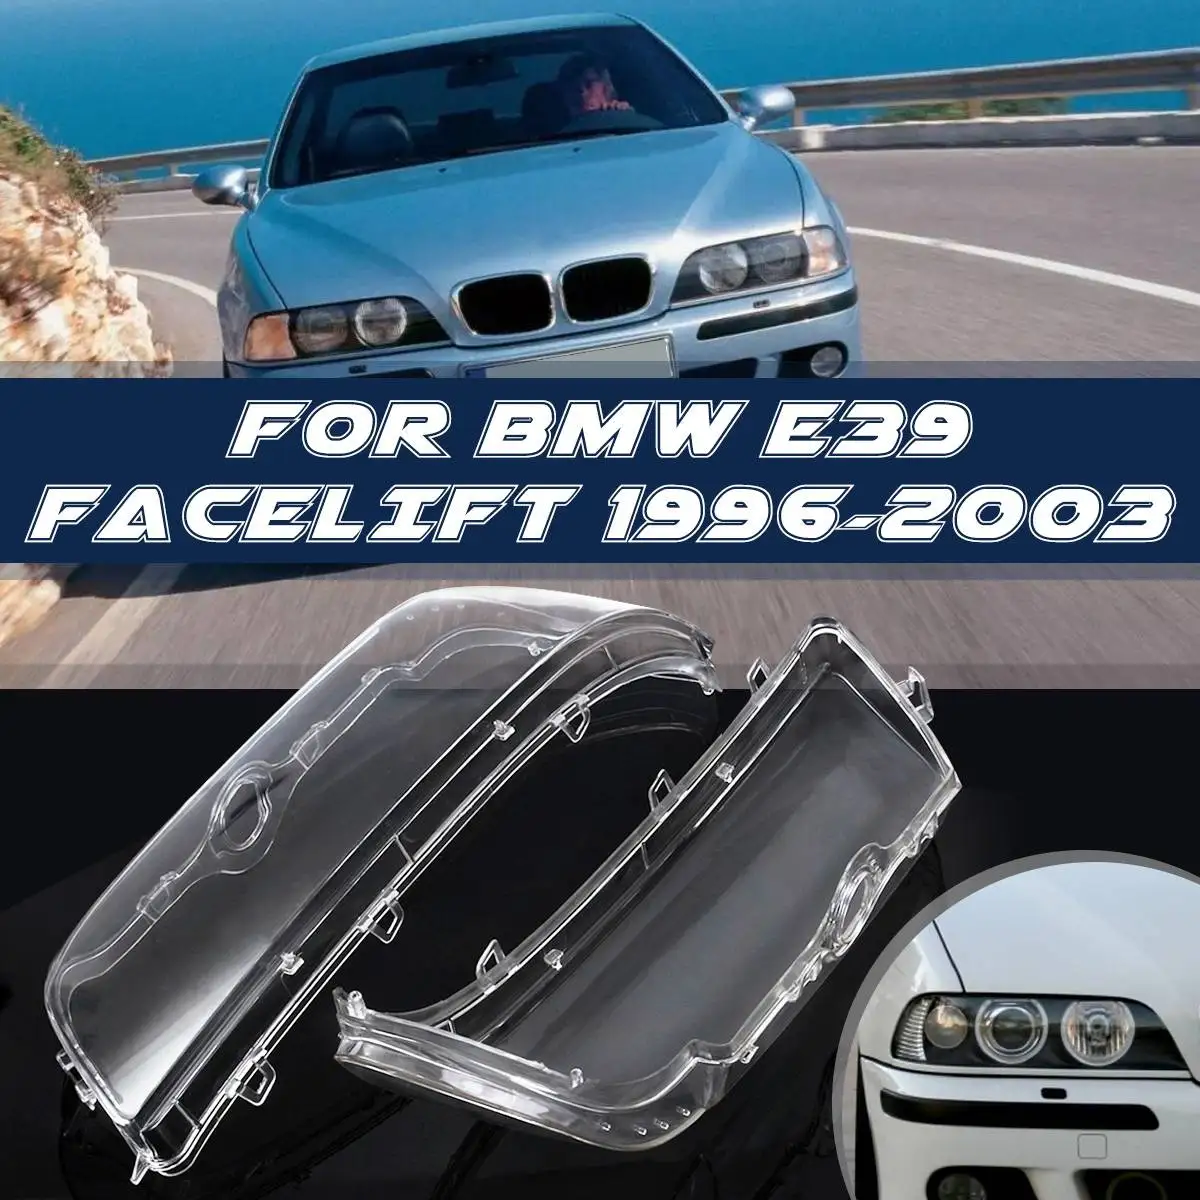 

1 Pair Car Headlight Cover Shell Headlight lamp Glass Lens Kit For BMW E39 Facelift 1996-2003 2002 2001 #63128375301 63128375302